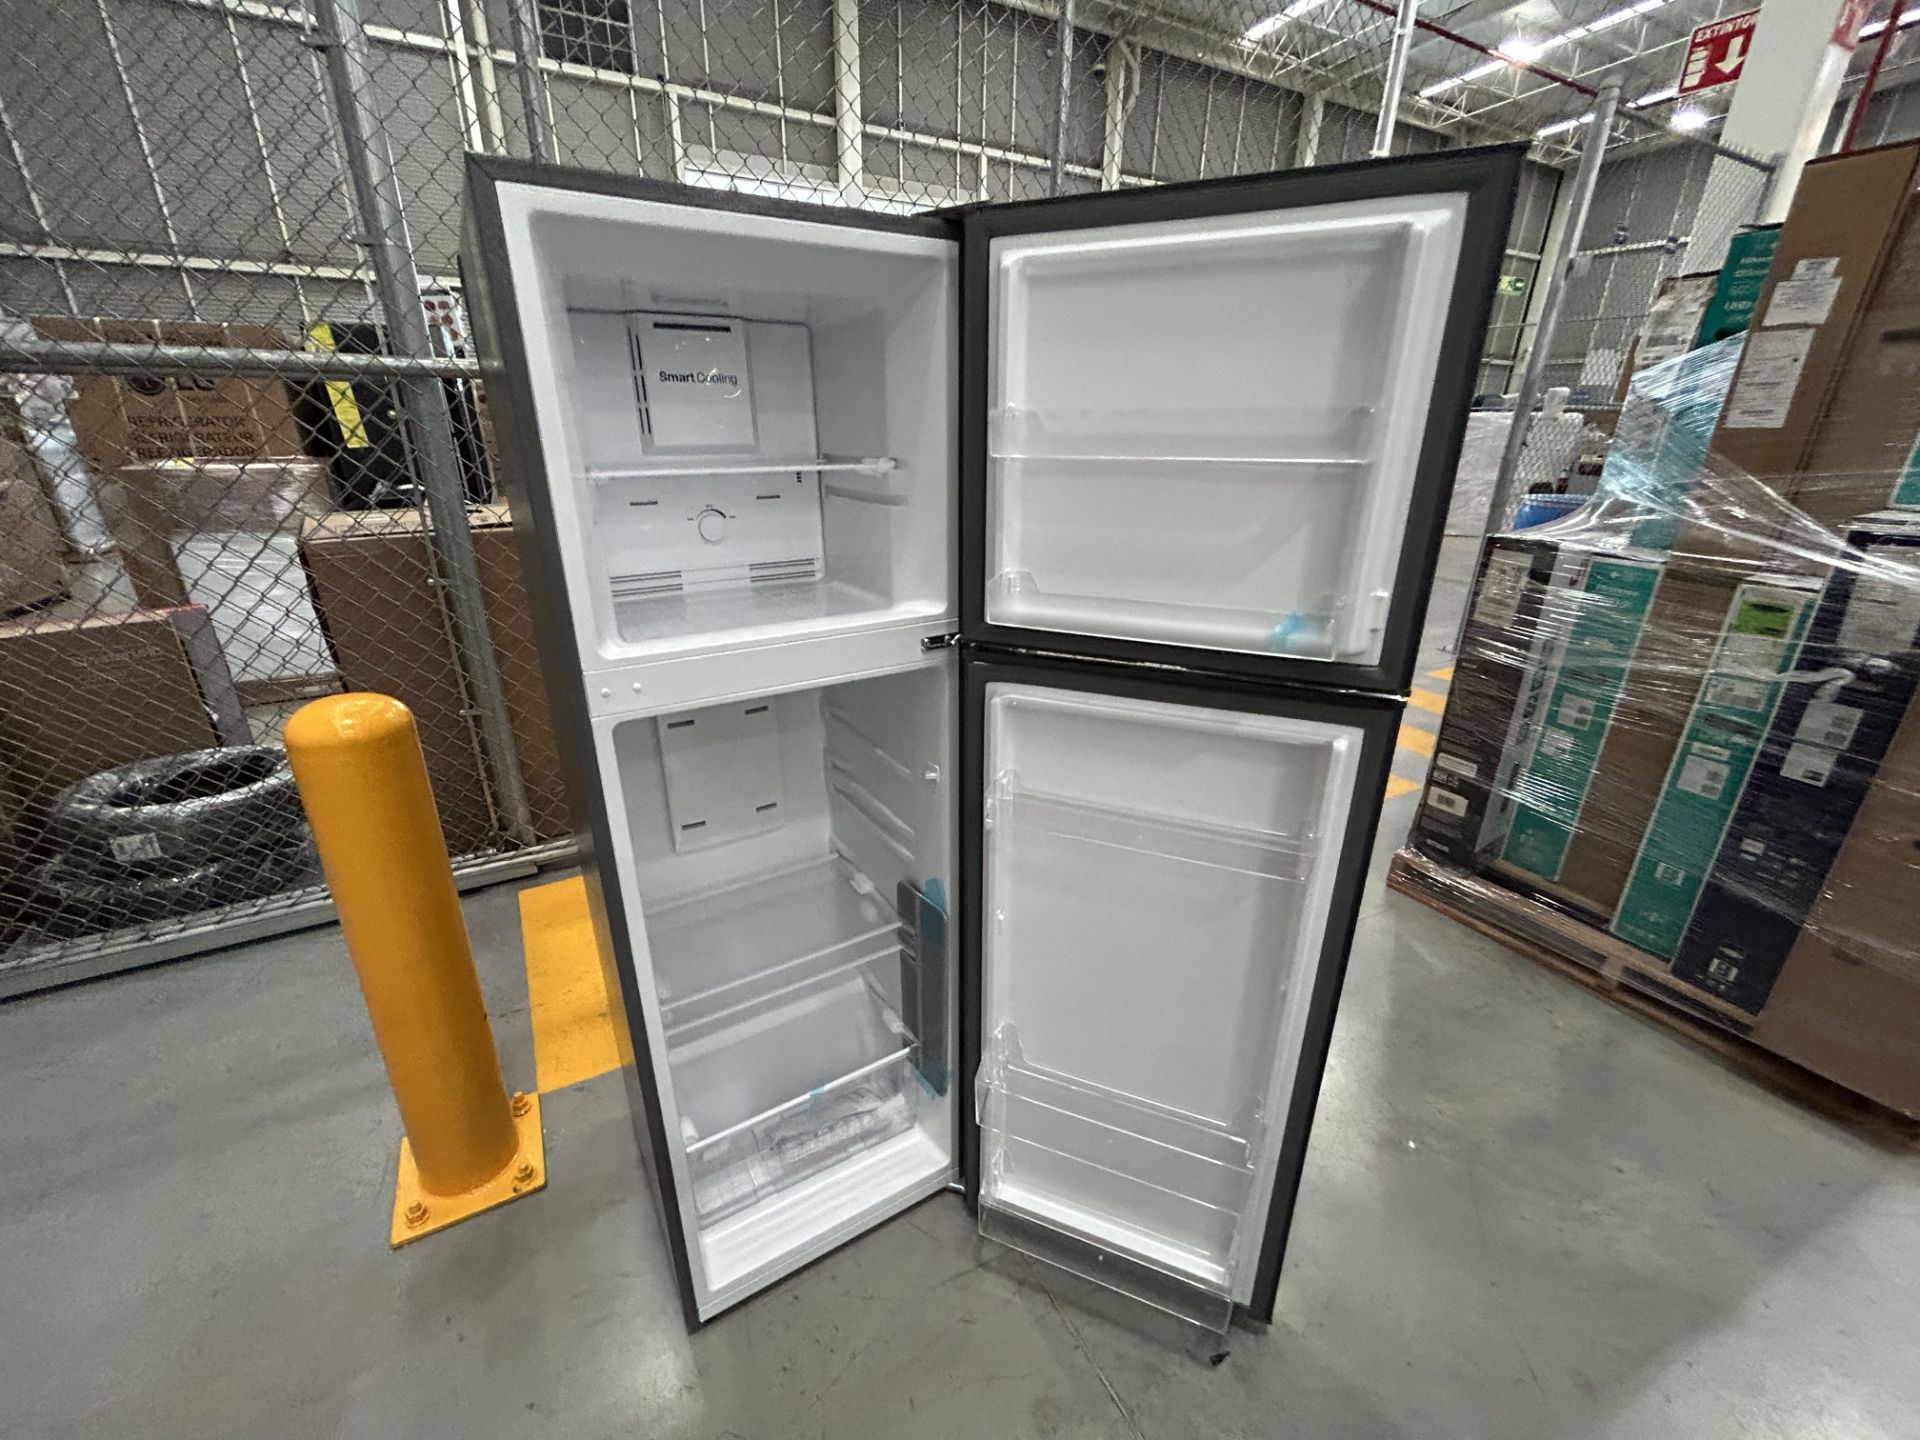 Lote de 2 refrigeradores contiene: 1 refrigerador Marca MABE, Modelo RME360FX, Serie 06730, Color G - Image 9 of 12